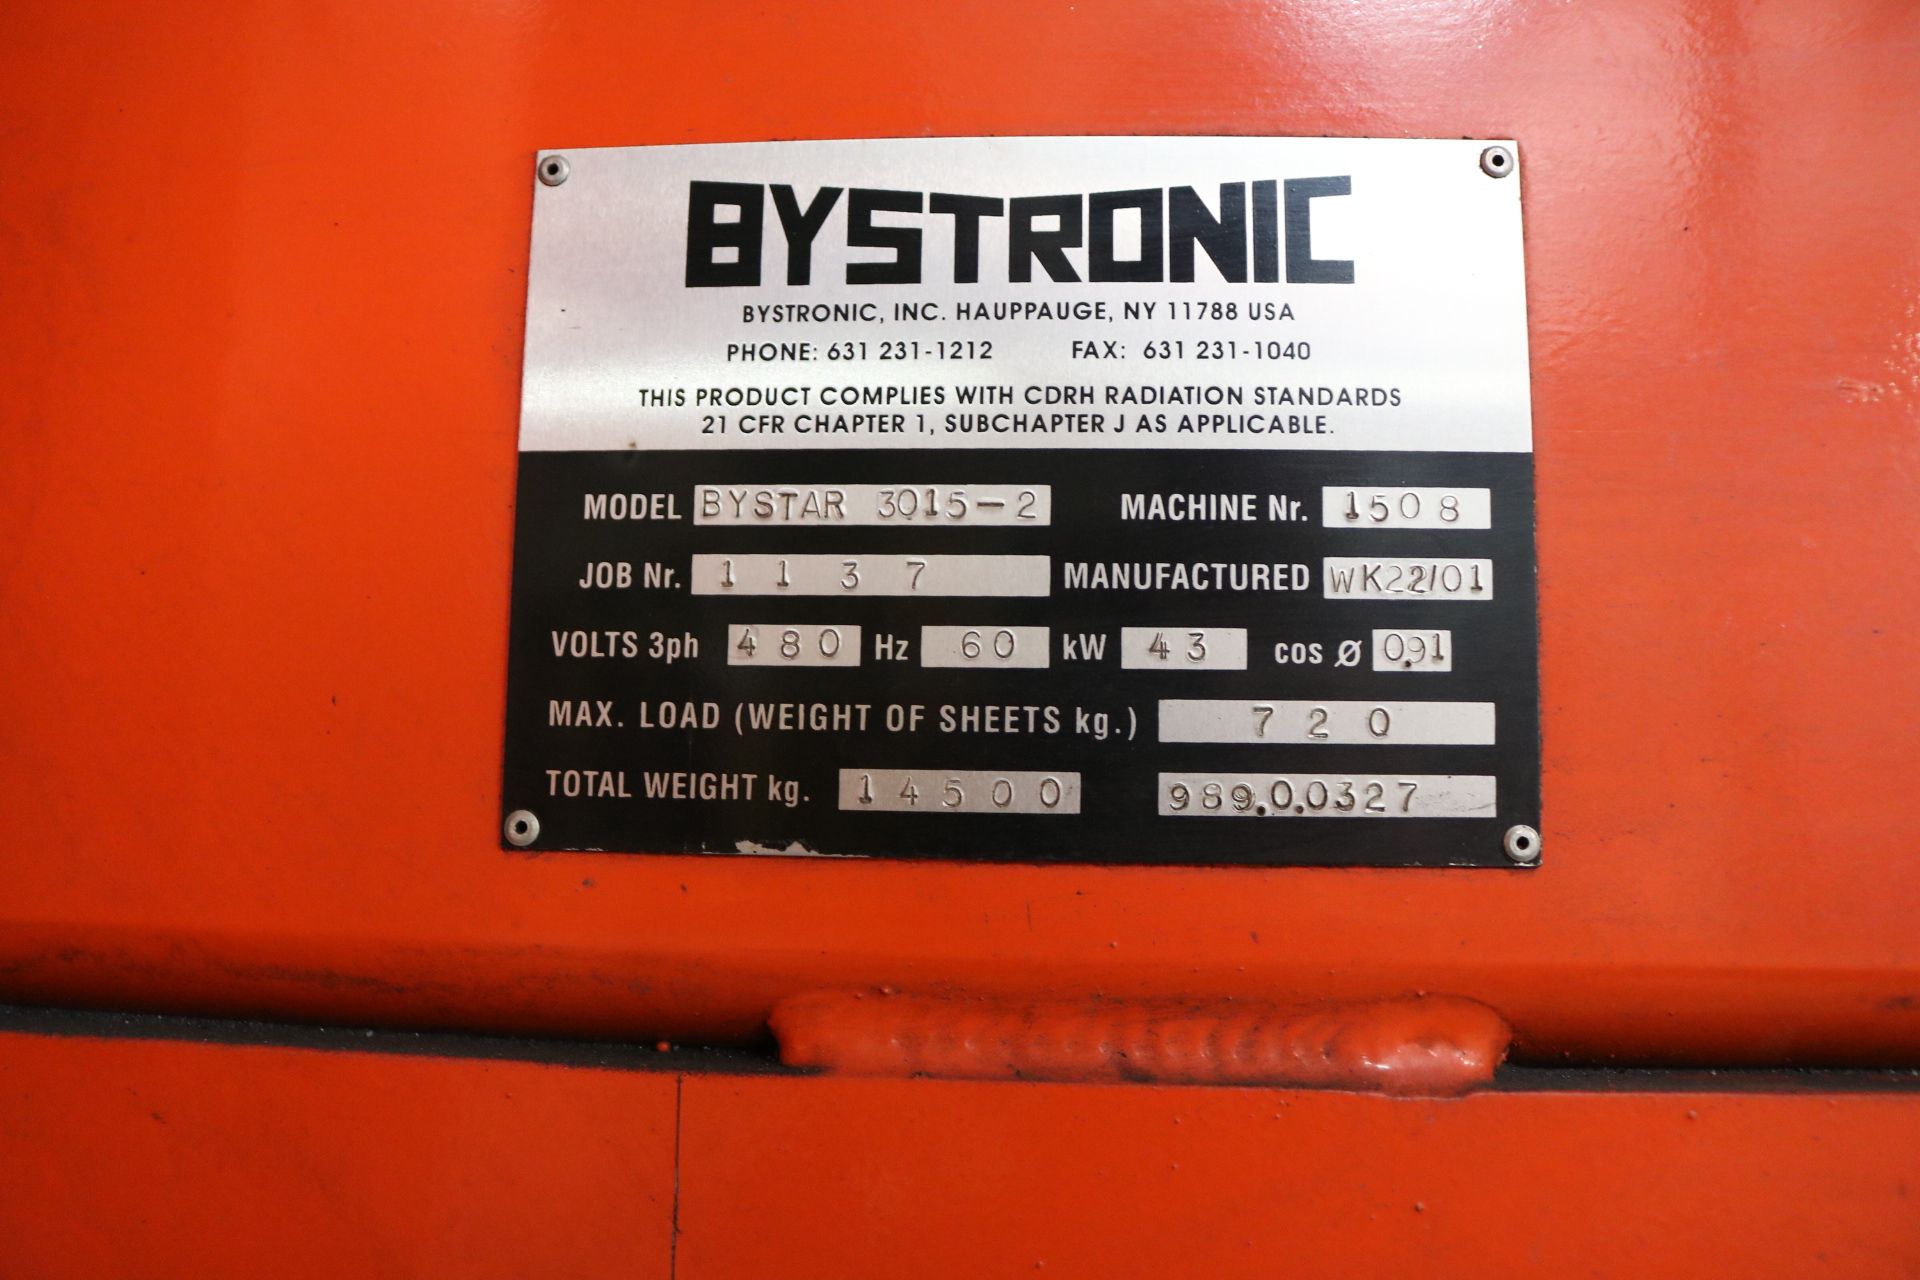 2001 BYSTRONICS BYSTAR 3015-2 CNC LASER CUTTER; 4,000 WATT, BYSTRONIC BTL 4000 TURBO C02 LASER, - Image 21 of 34